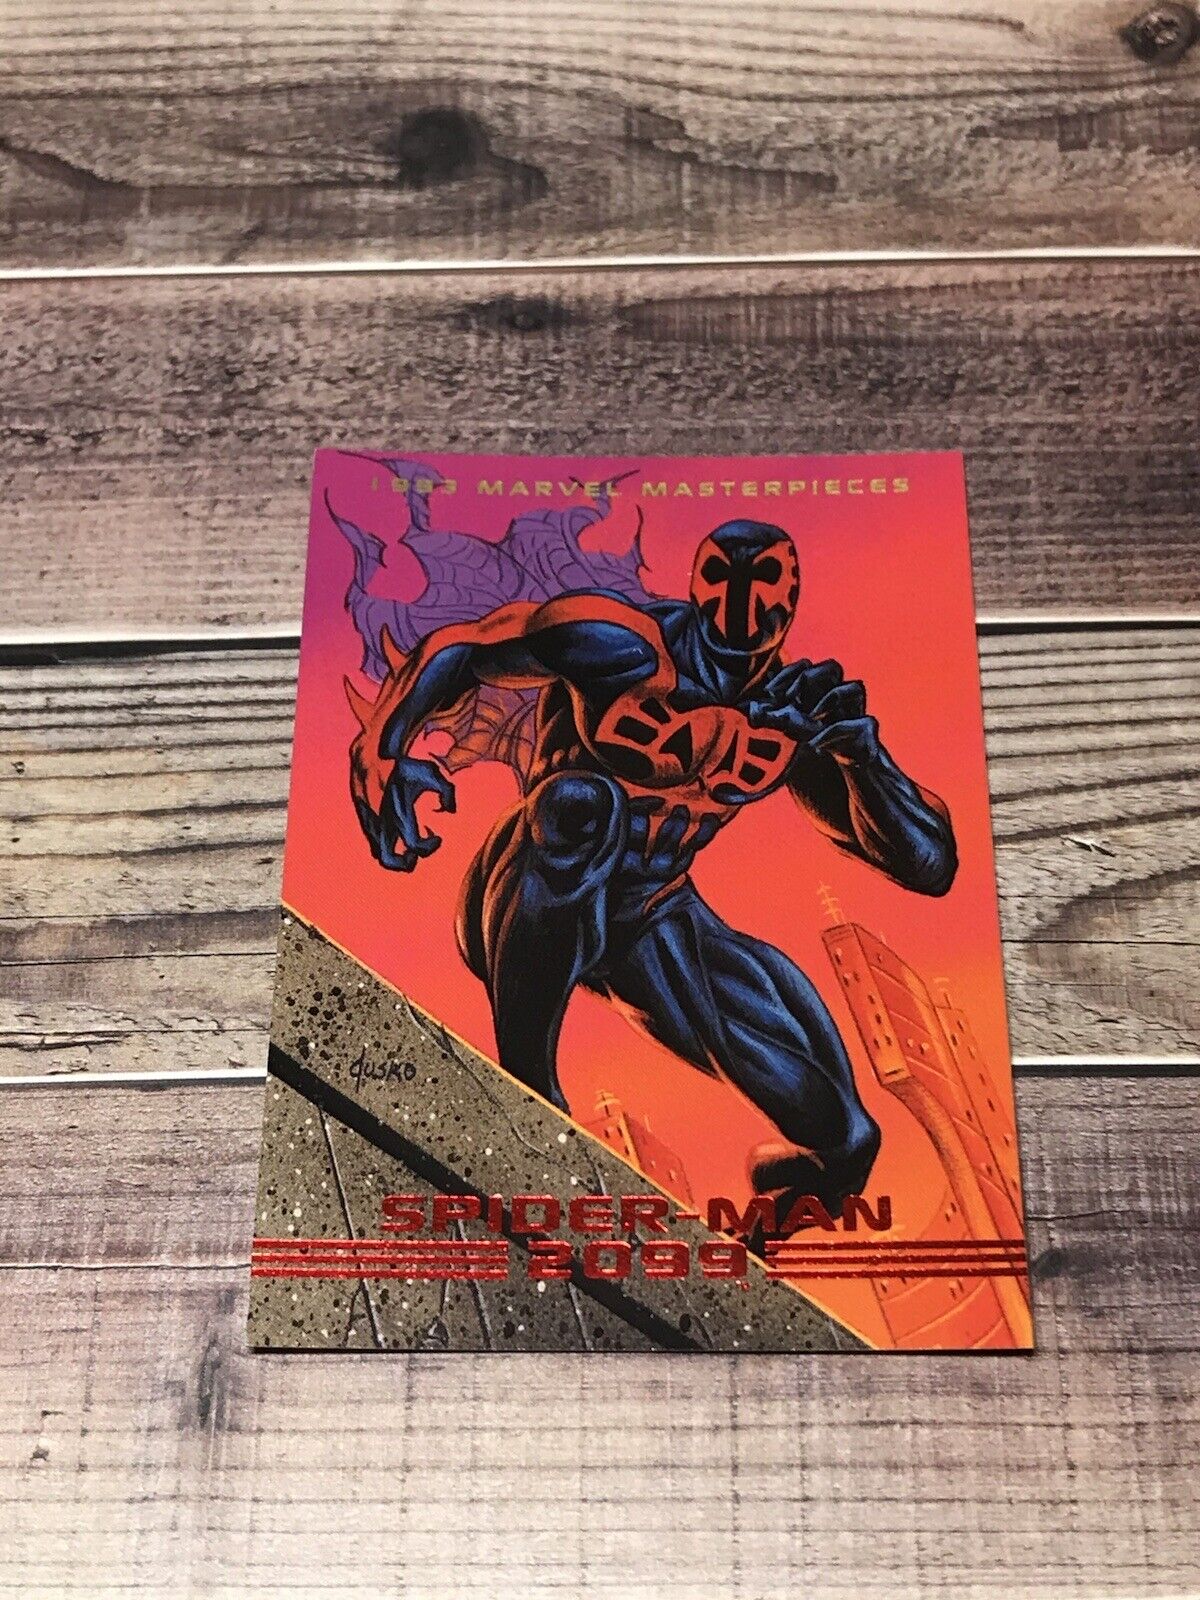 1993 Marvel Masterpieces Spider-Man 2099 #41